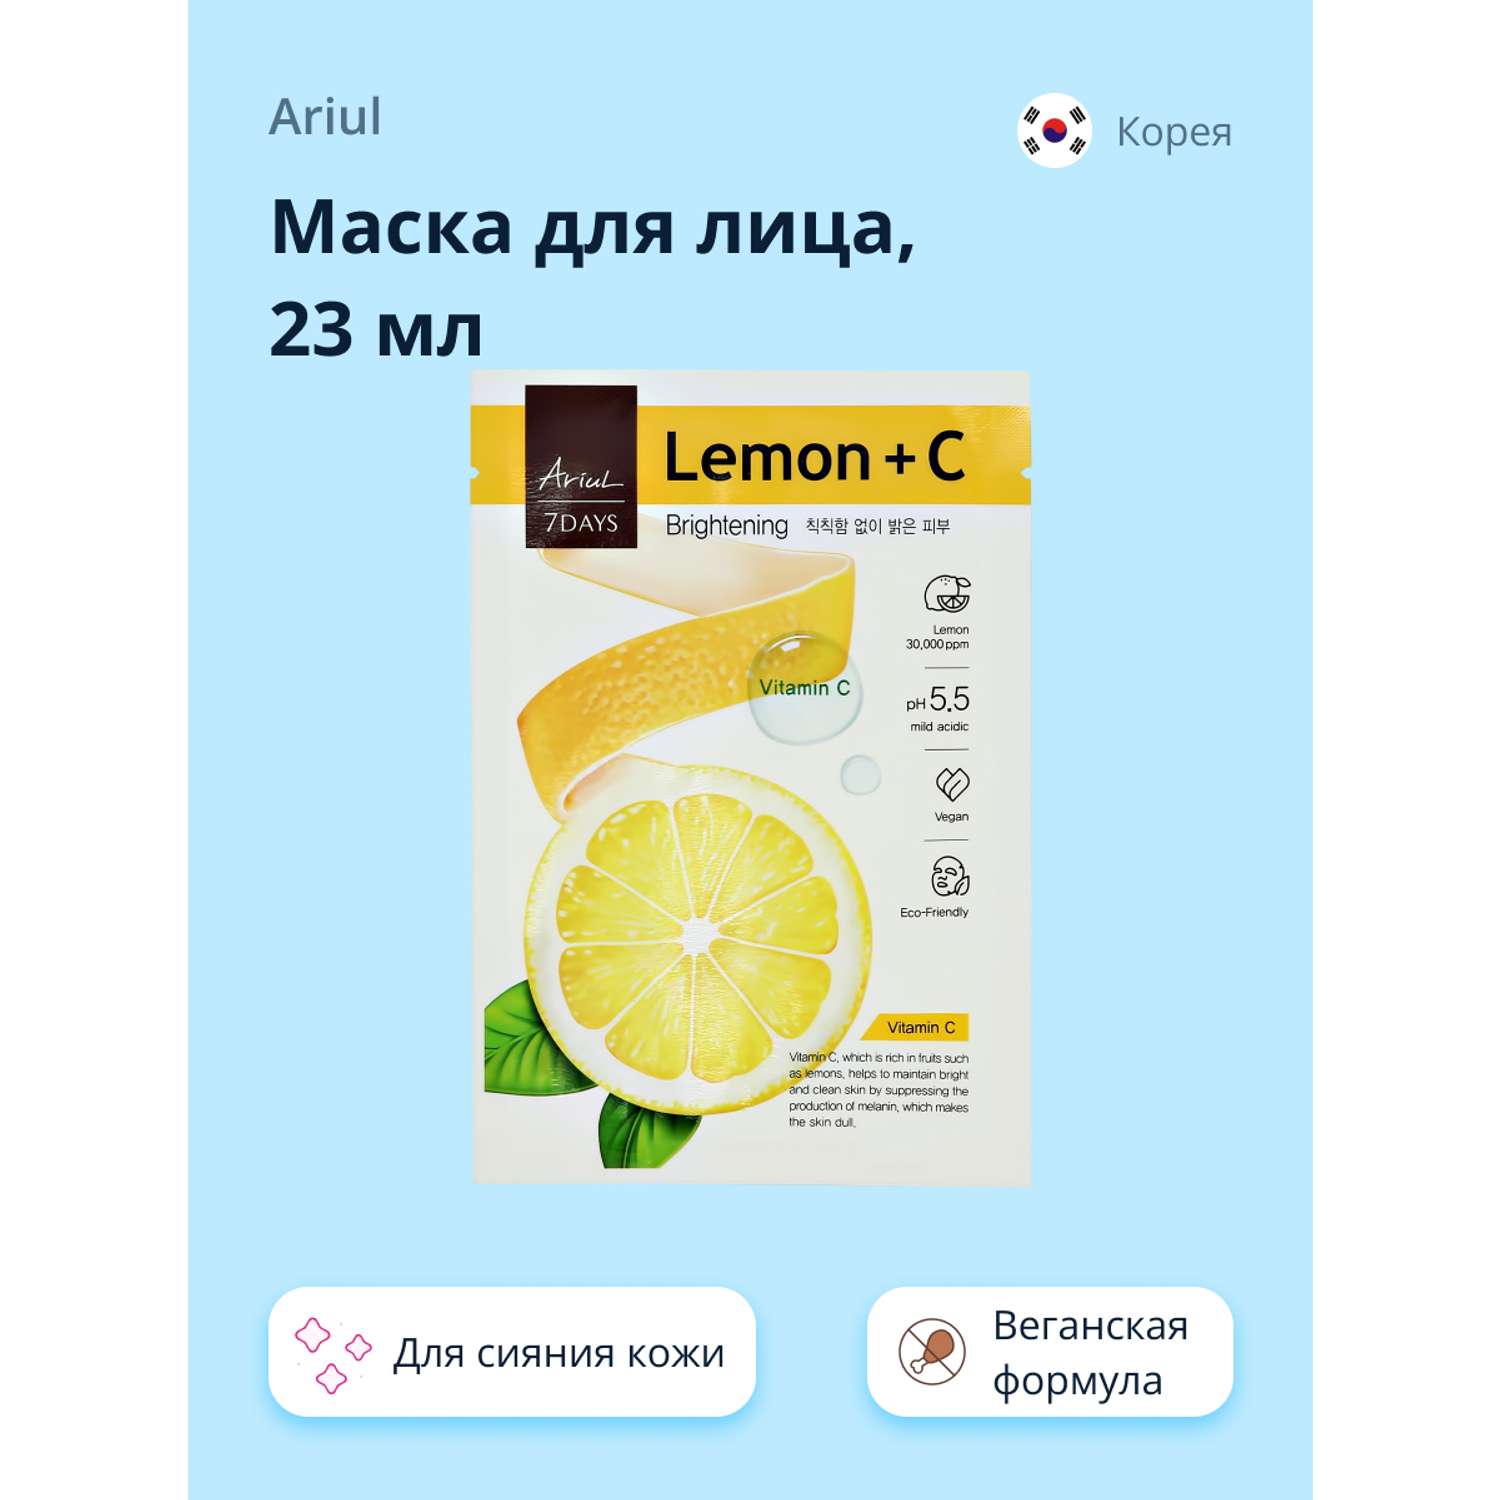 Маска тканевая Ariul 7 days с экстрактом лимона и витамином С 23мл - фото 1